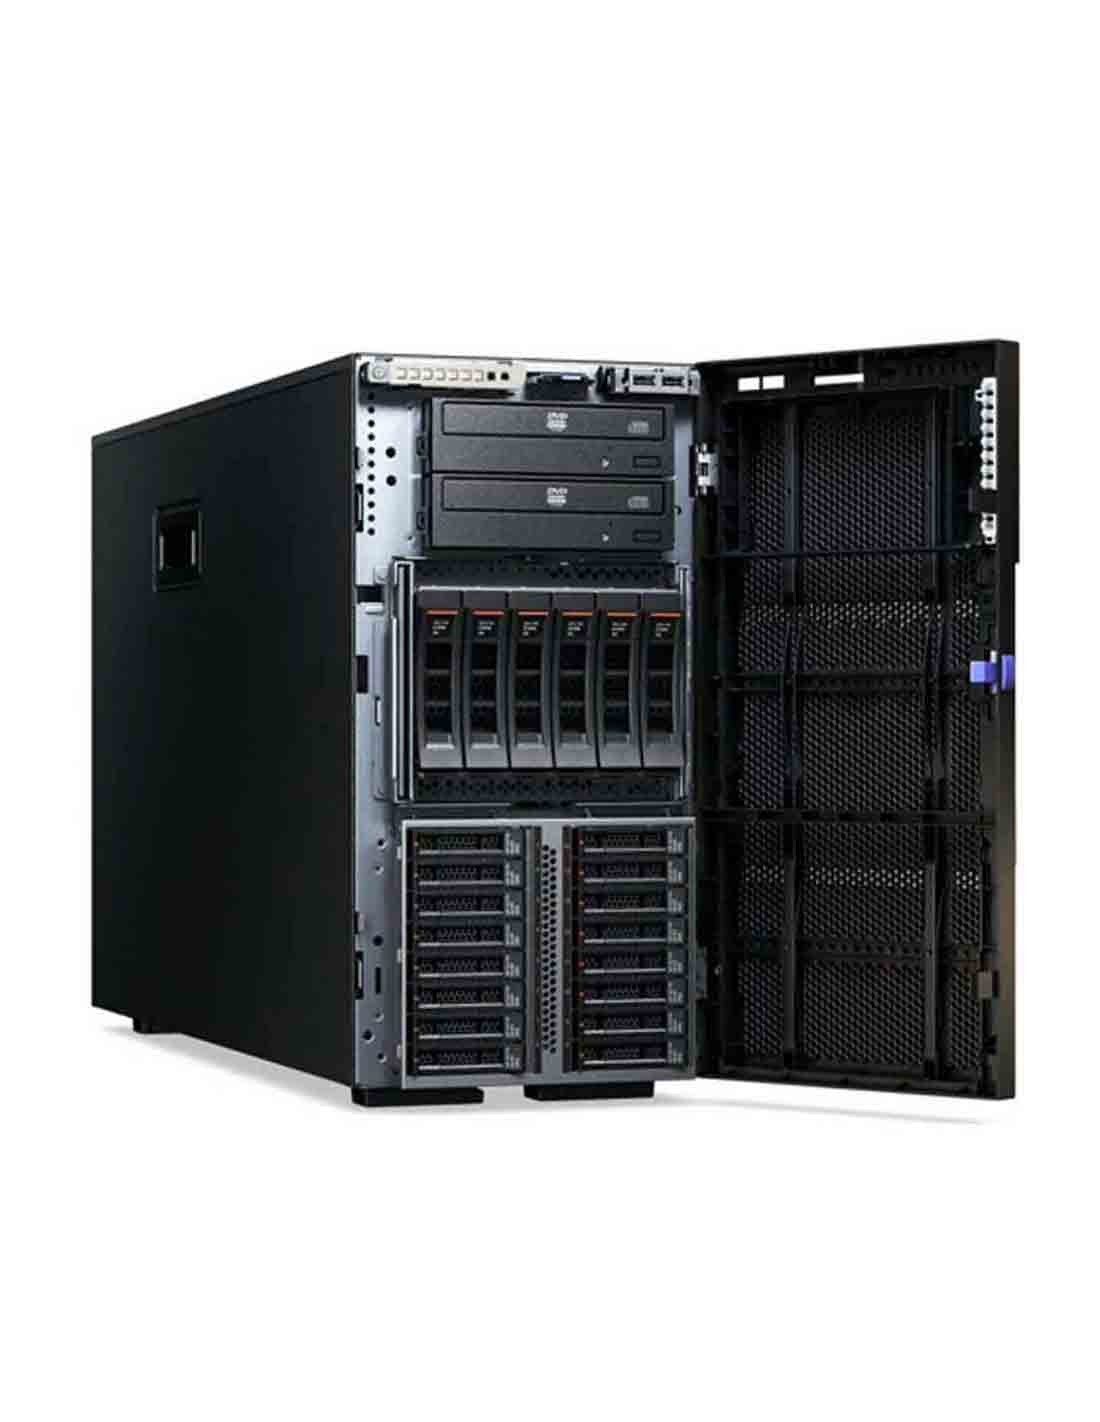 Lenovo x3500 m5 Tower Server E5-2620v3 5464C4G Dubai Online Shop